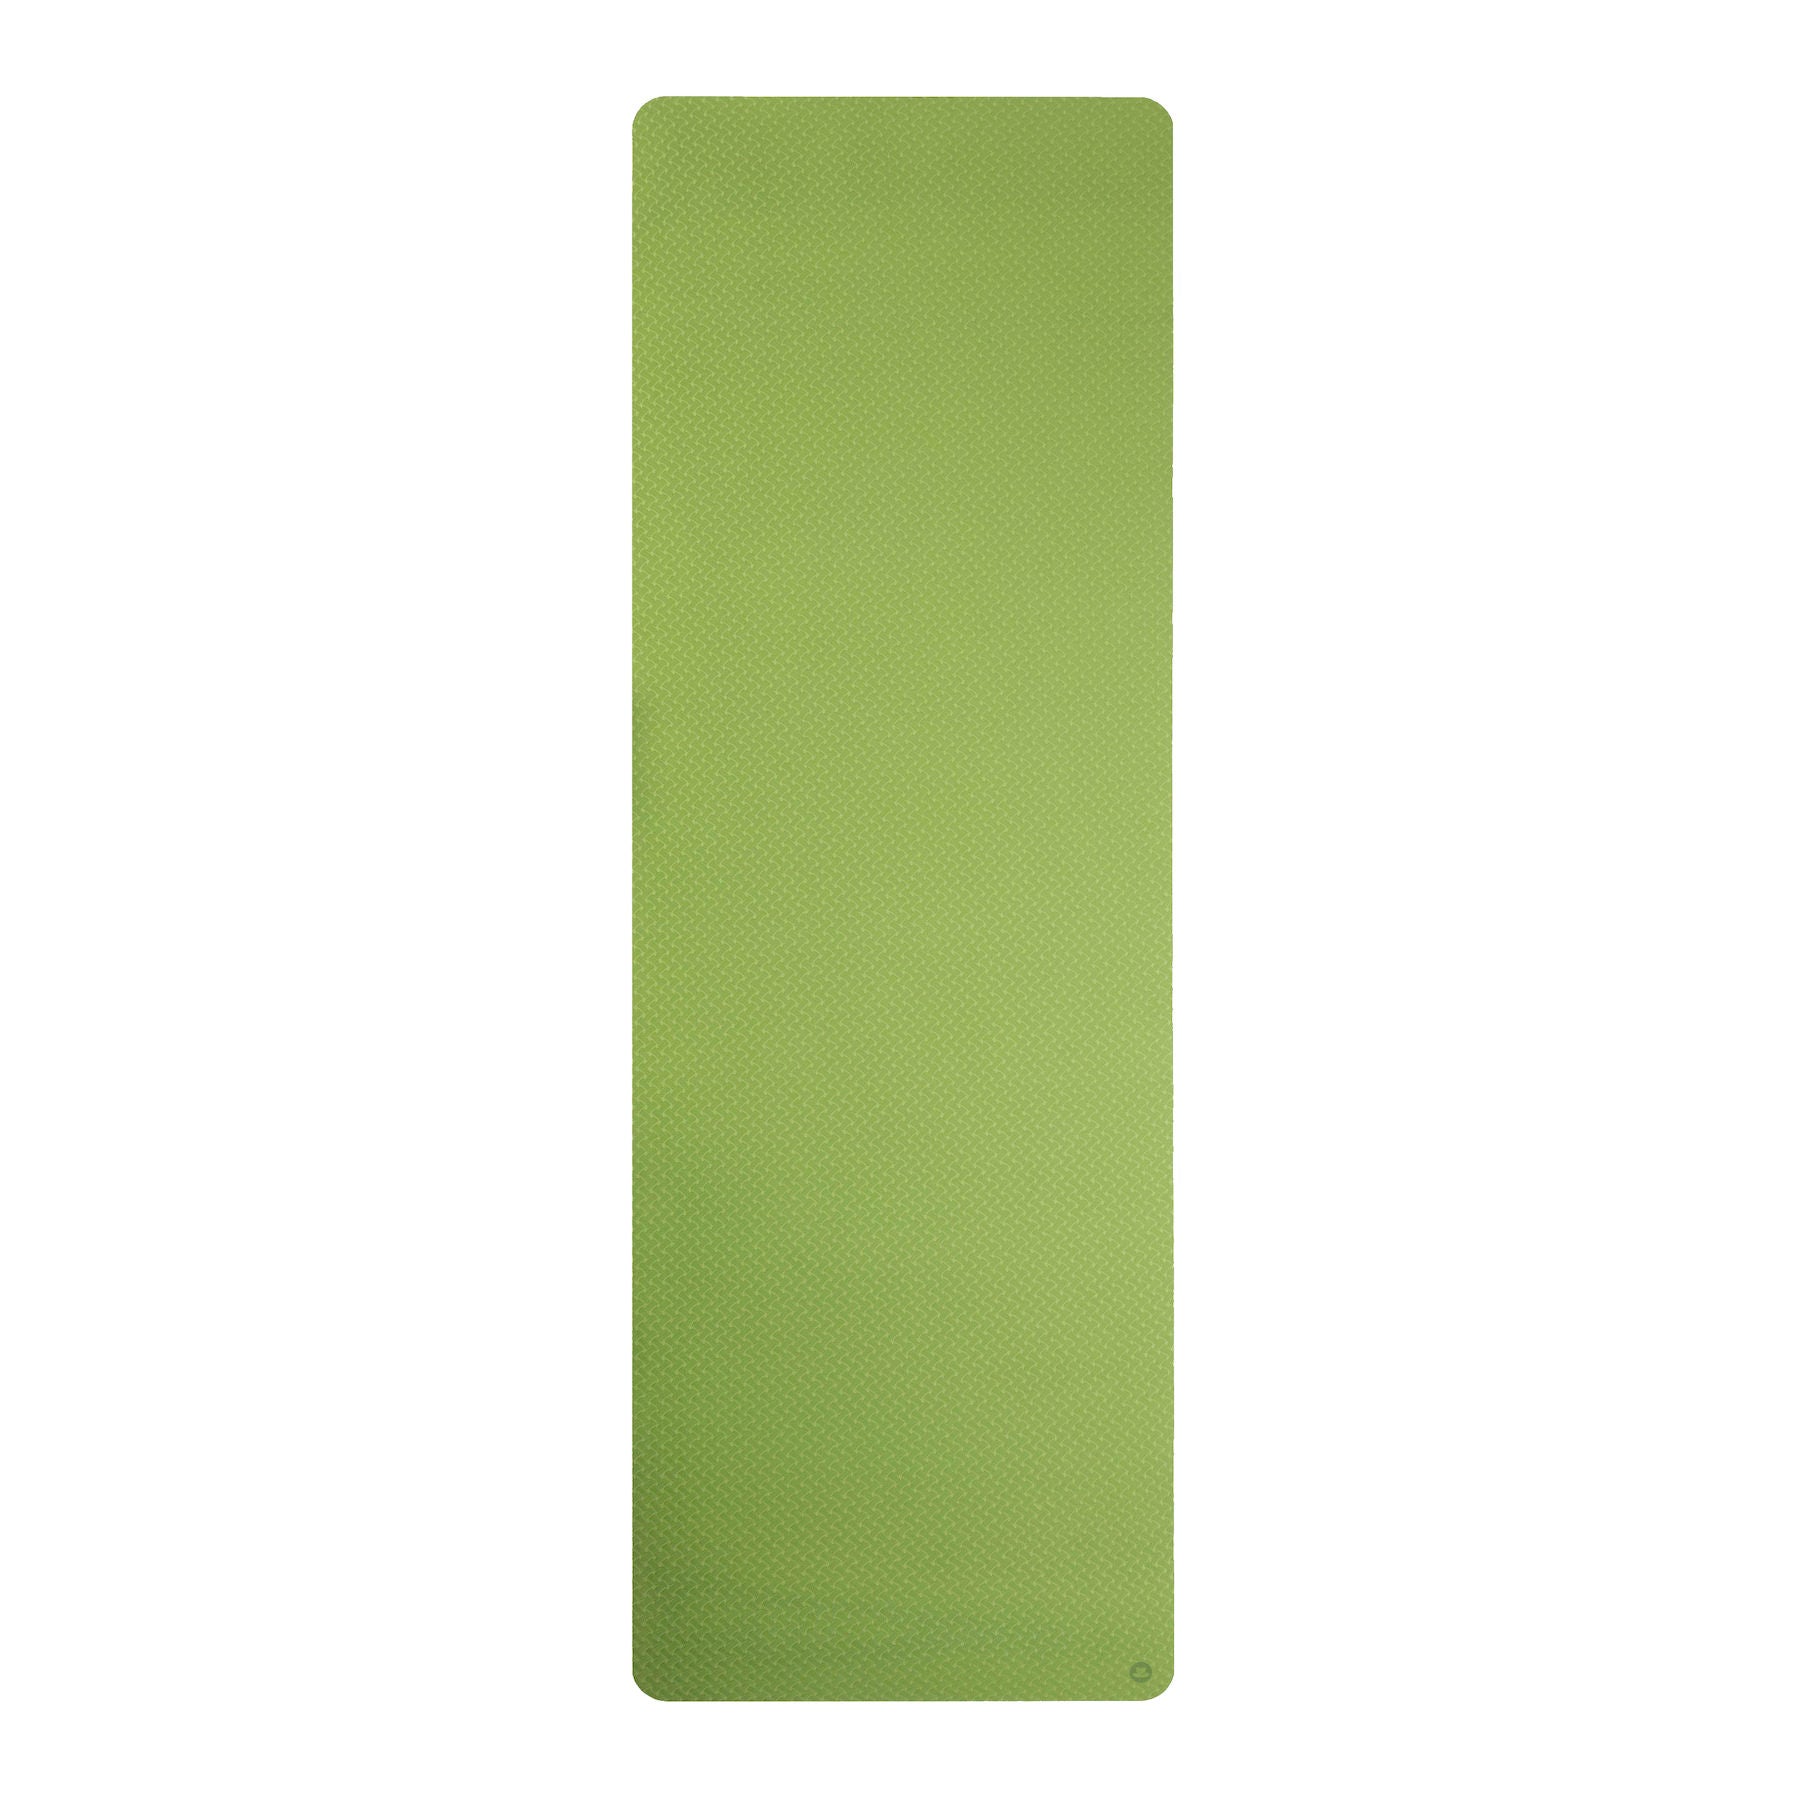 Tappetino da yoga in TPE verde, extra leggero, senza PVC, ecologico, spessore 6mm